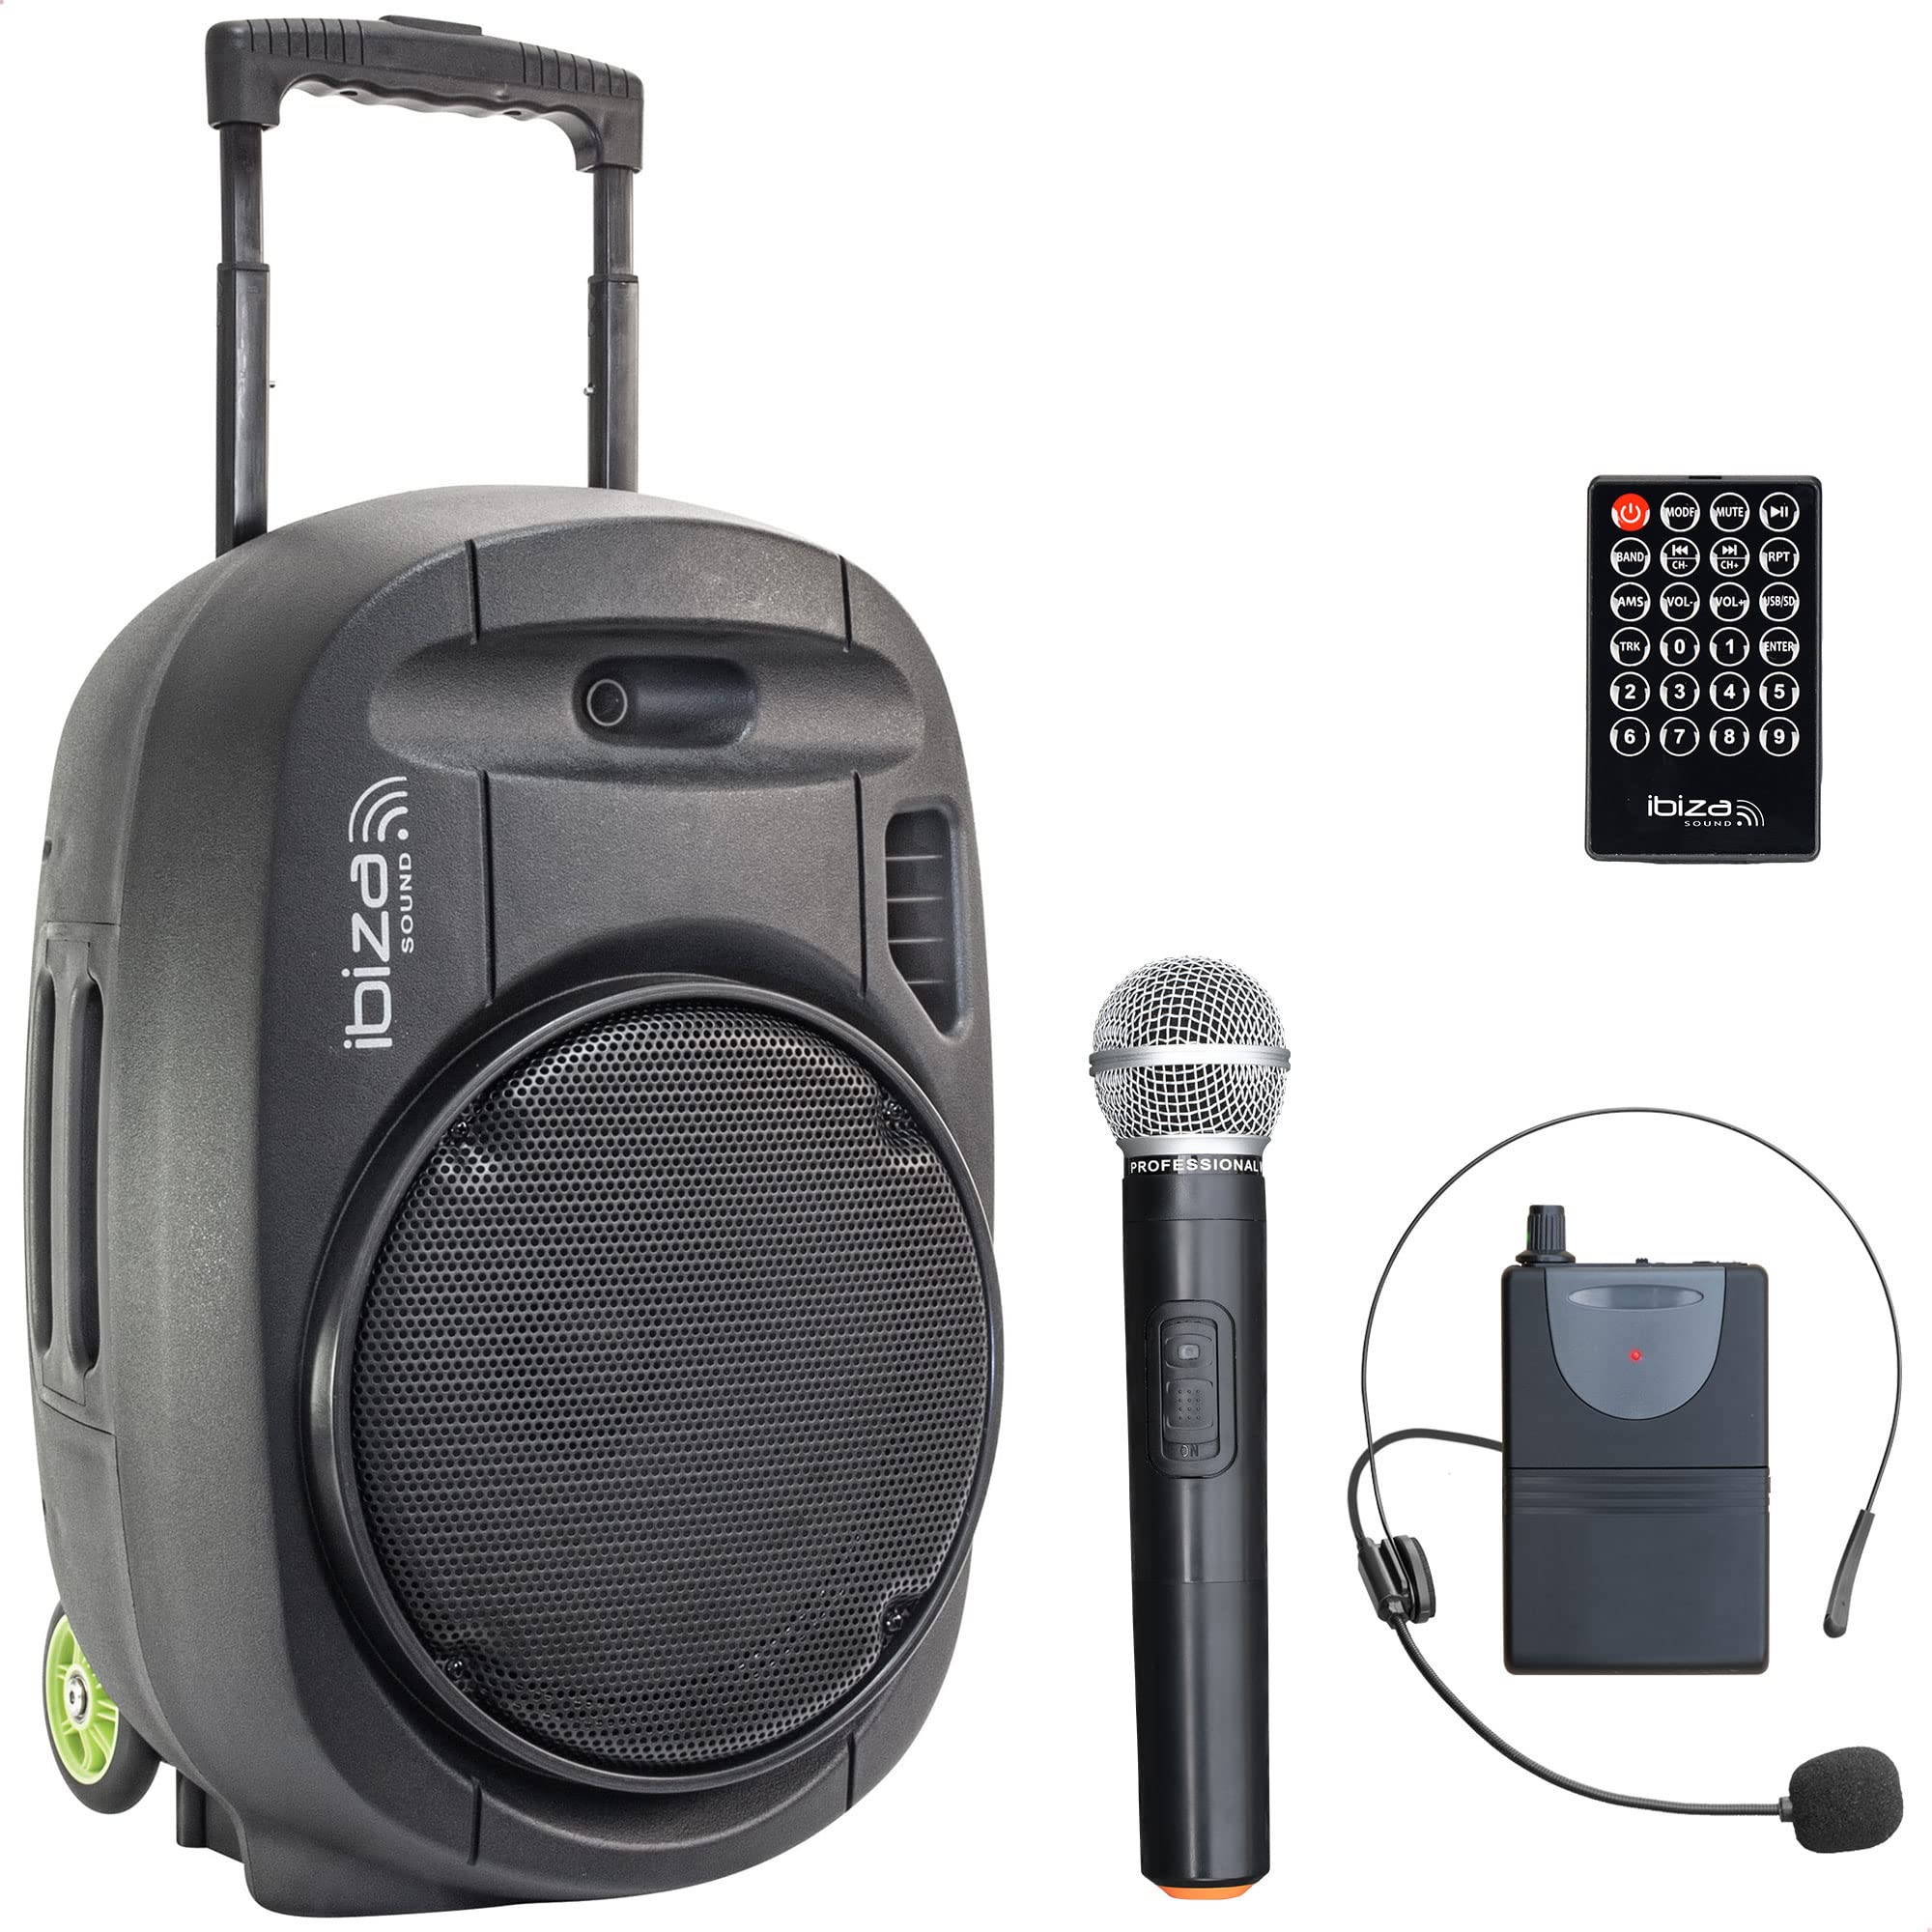 PORT12VHF-MKII - IBIZA - Tragbarer Lautsprecher (12"/700W MAX) mit 2 Mikrofonen (VHF), Fernbedienung und Zubehörtasche - Bluetooth, USB, SD - 5-7 Std. Wiedergabezeit.